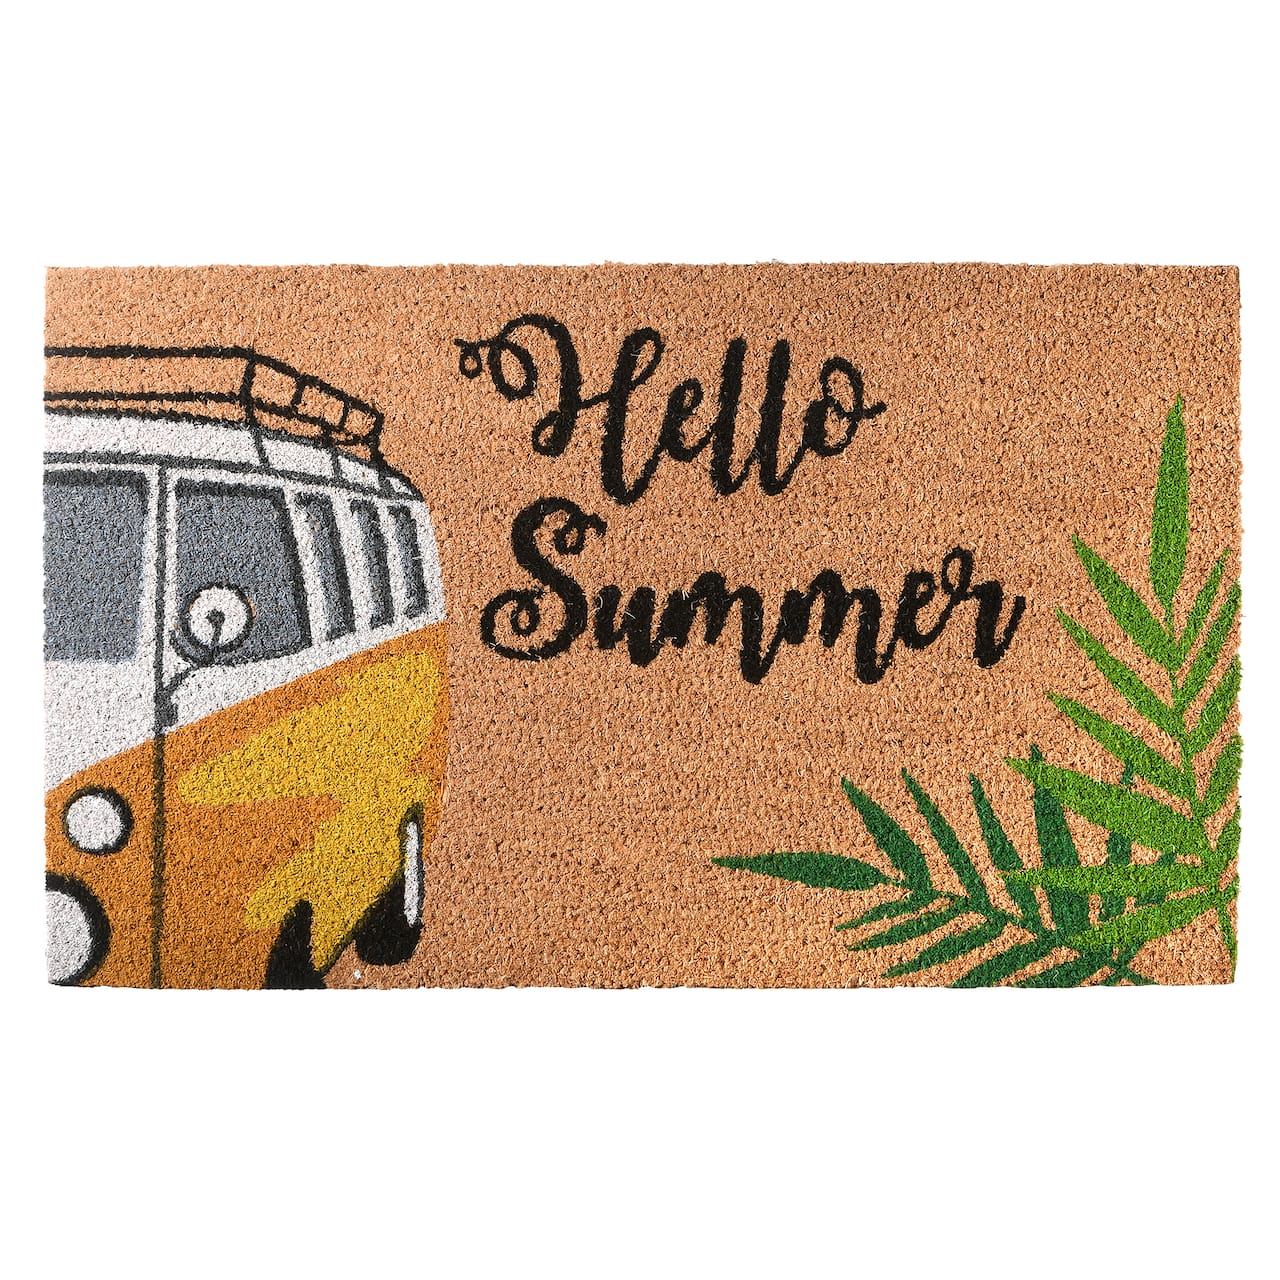 Hello Summer Coir Doormat